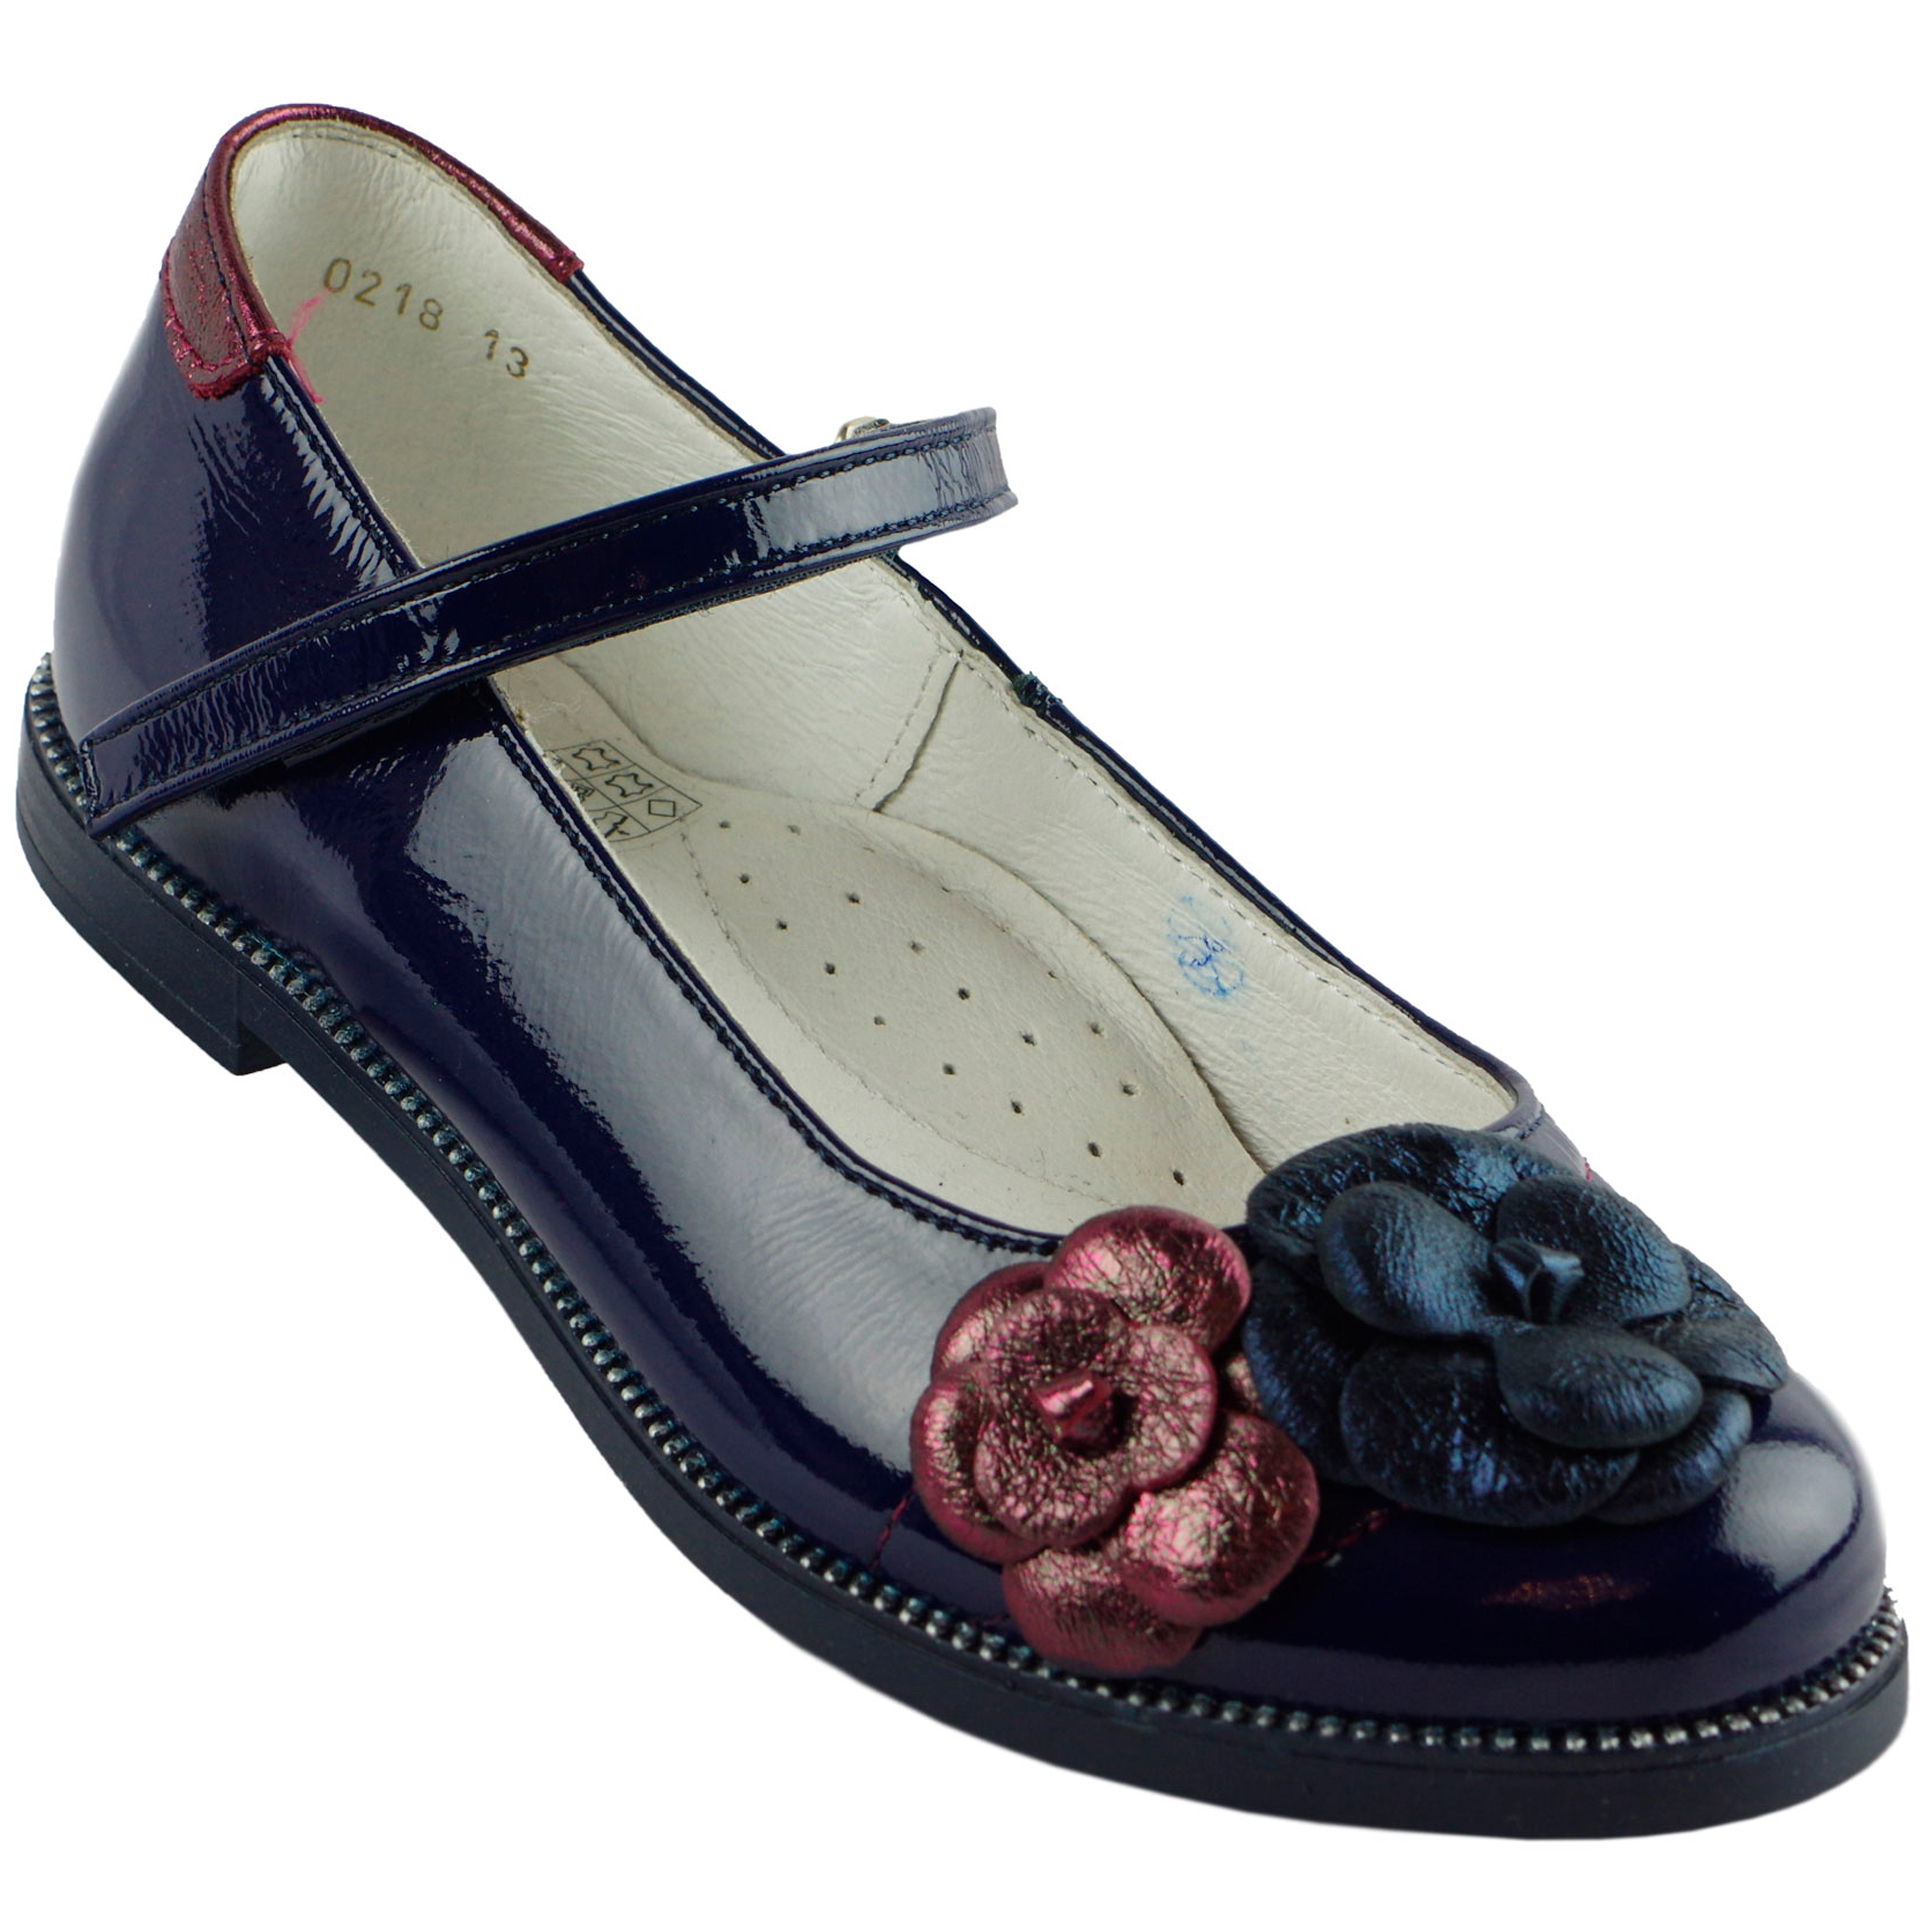 Туфли школьные (1444) материал Лаковая кожа, цвет темно-синий  для девочки 27-35 размеры – Sole Kids